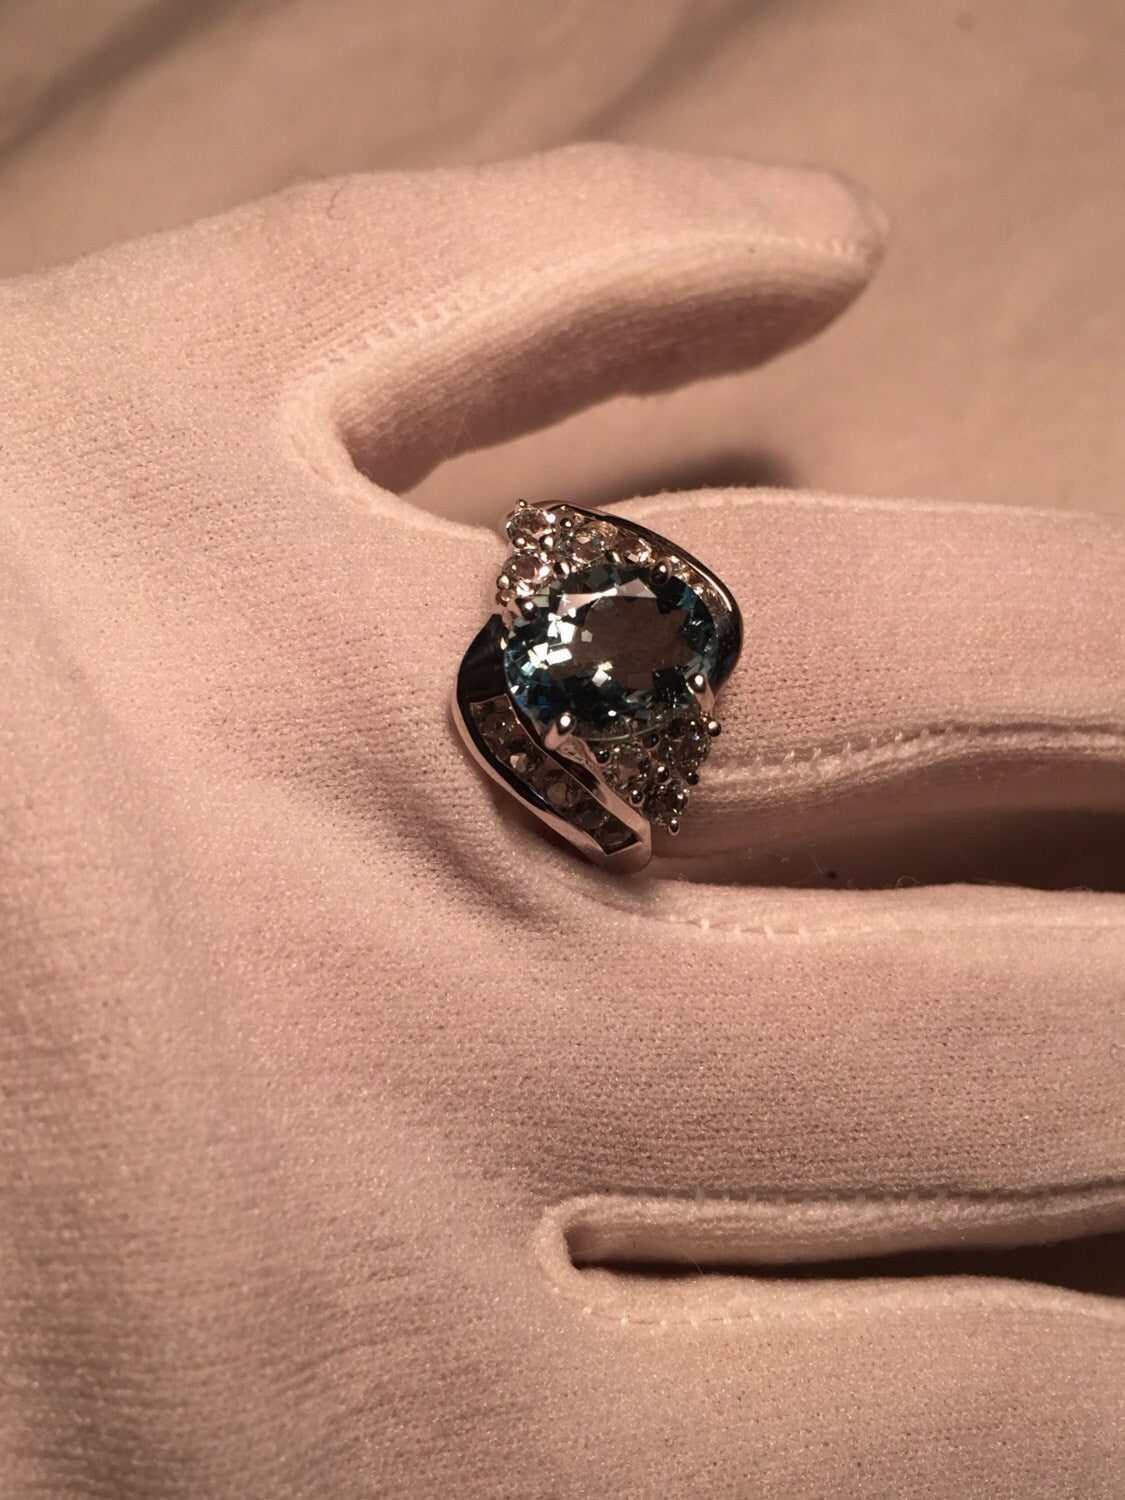 Vintage geniune blue topaz 925 sterling silver Ring